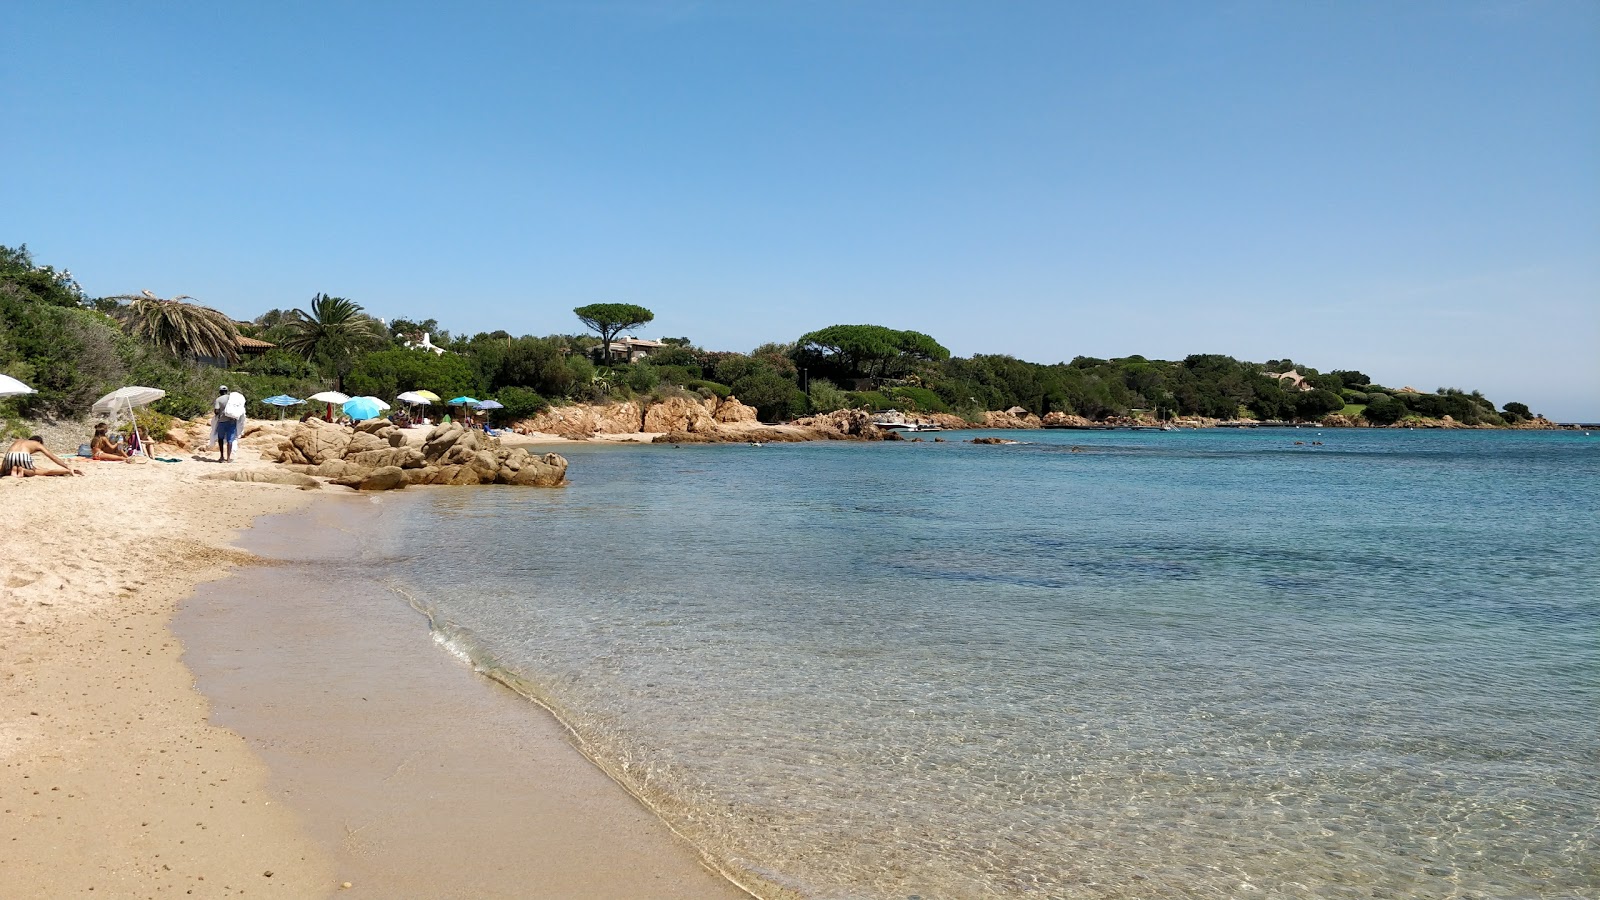 Valokuva Spiaggia Del Romazzinoista. pinnalla kevyt hieno kivi:n kanssa